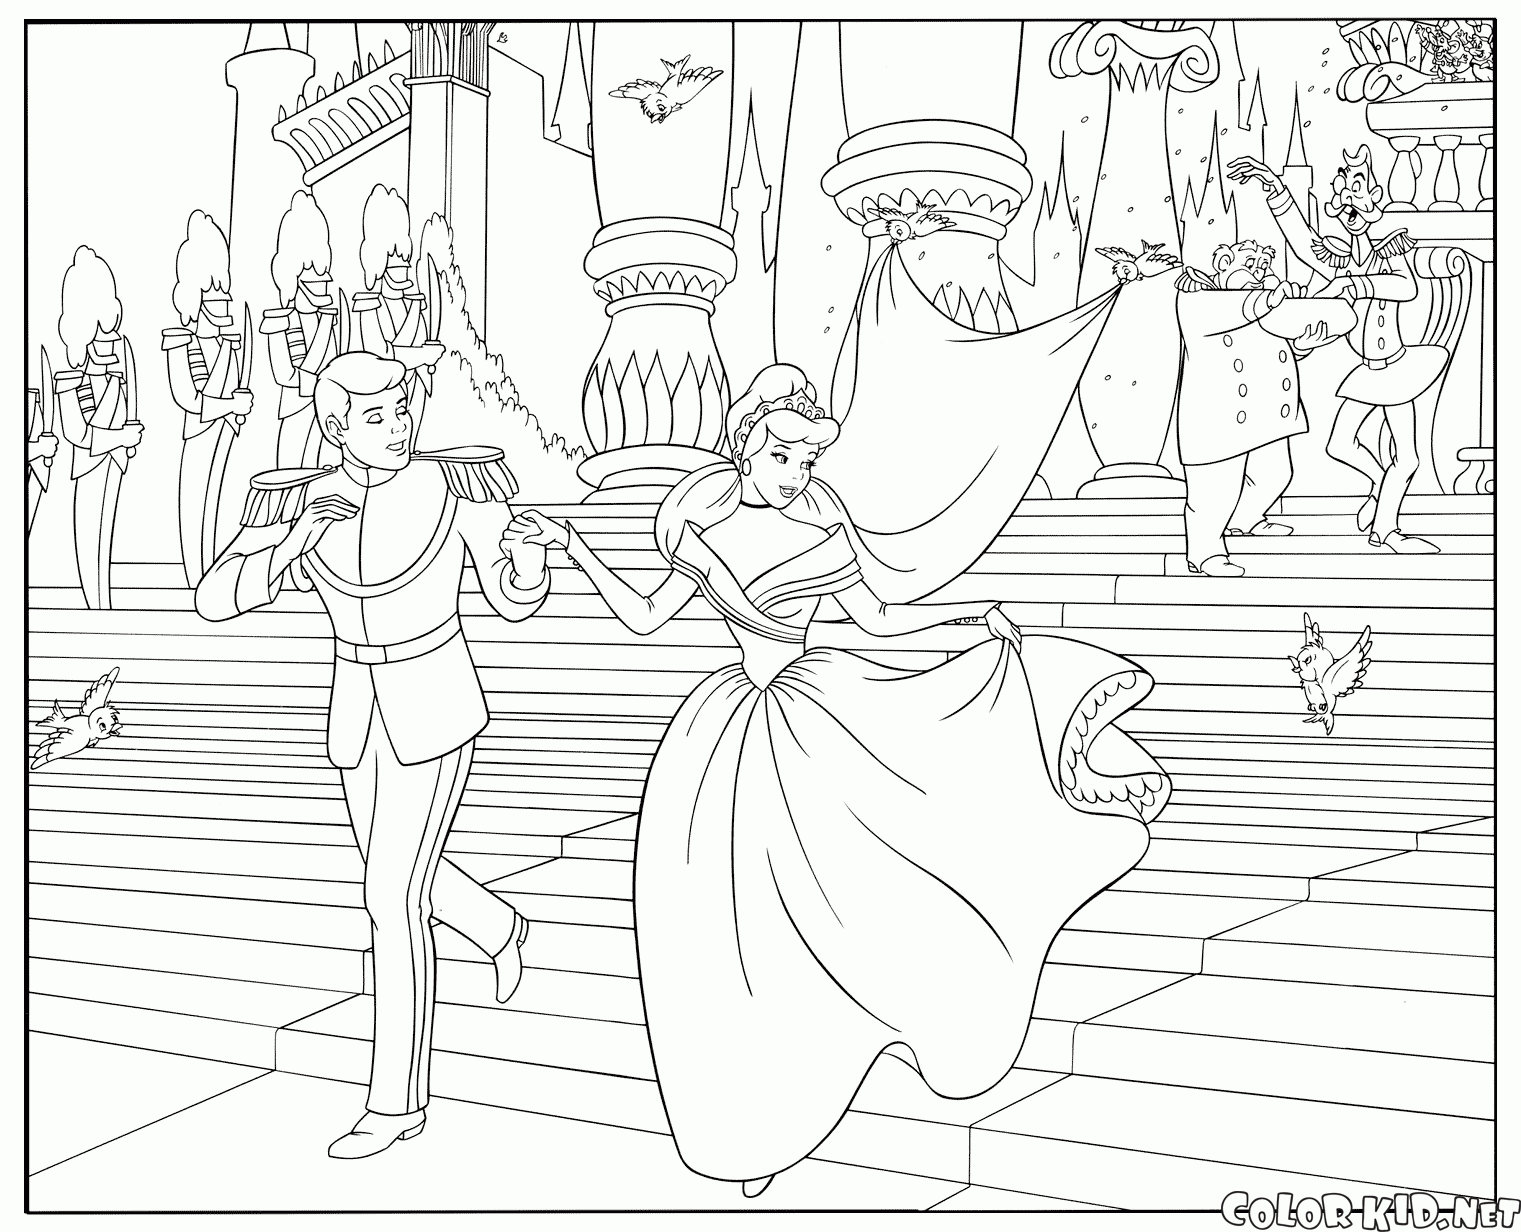 La boda de Cenicienta y el Príncipe